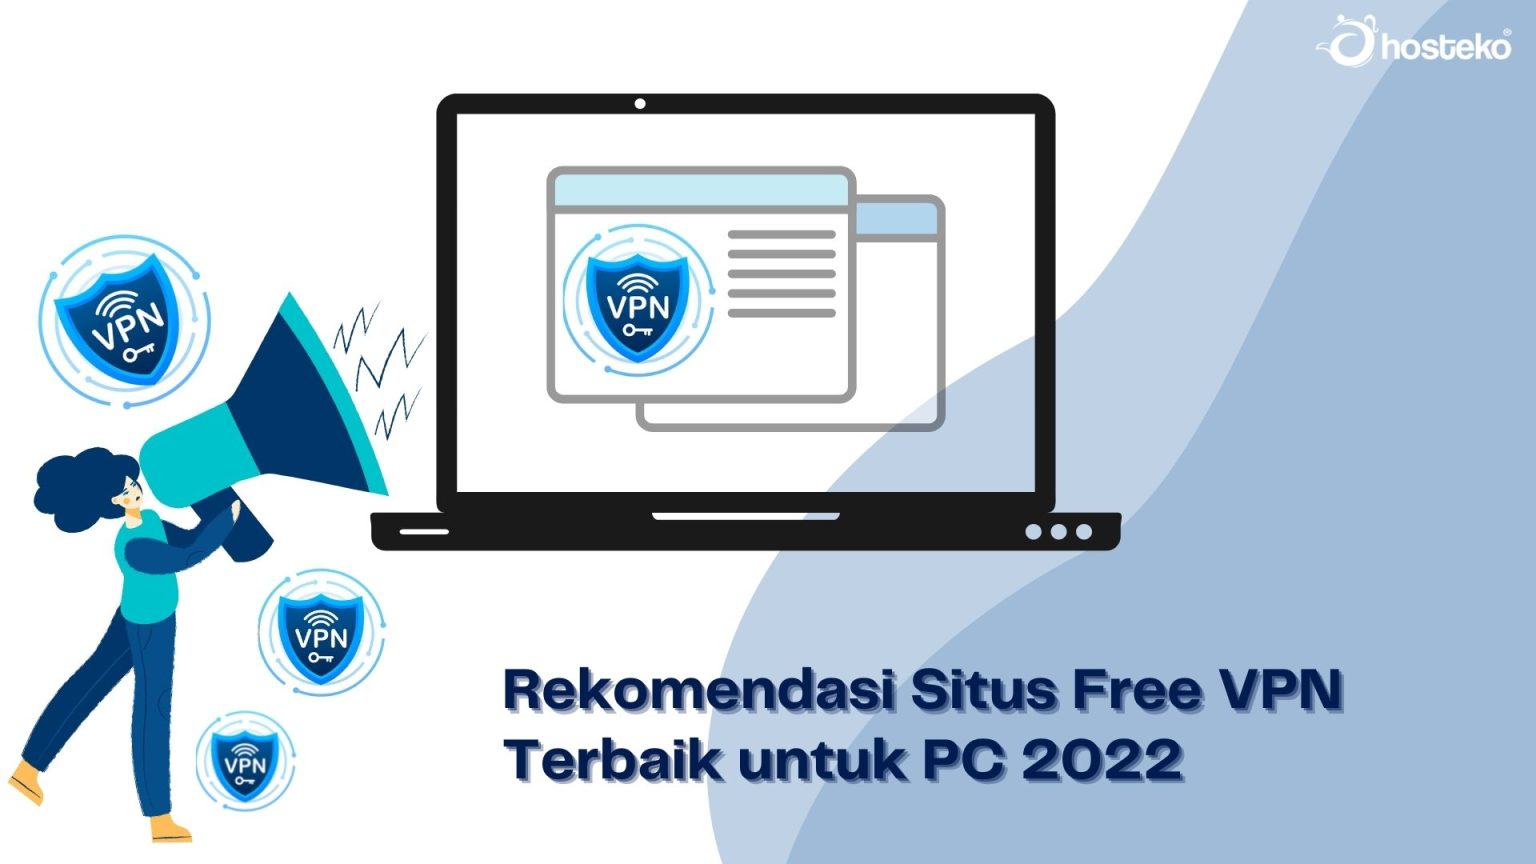 Rekomendasi Situs Free VPN Terbaik untuk PC 2022 - Hosteko Blog